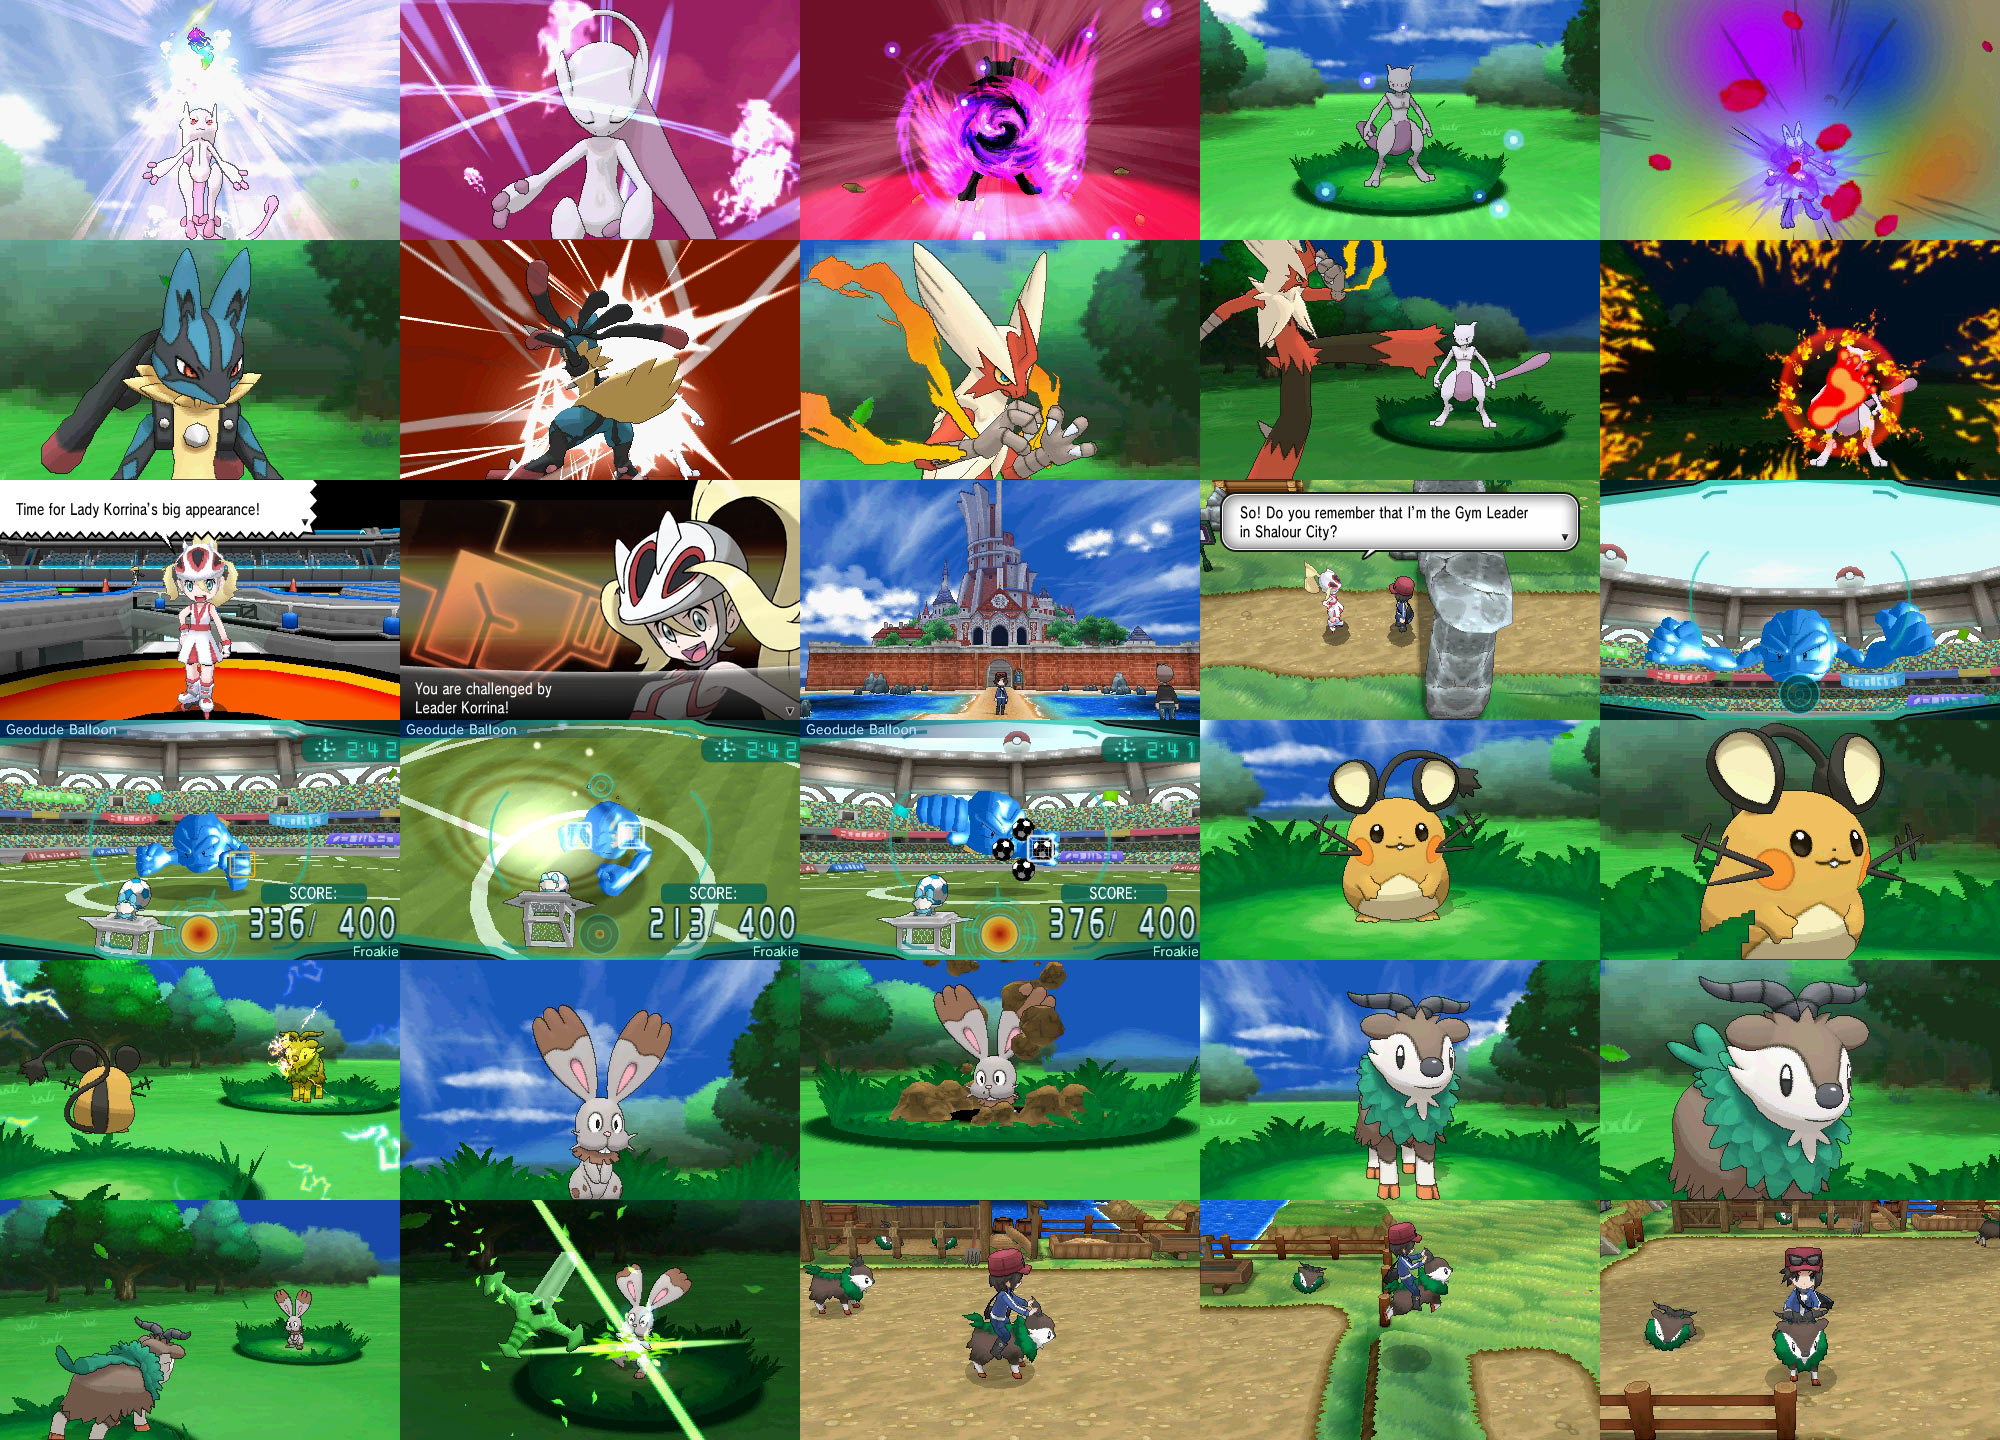 Confirmadas as últimas evoluções dos iniciais de Pokémon X & Y, e outras mega  evoluções, confira!